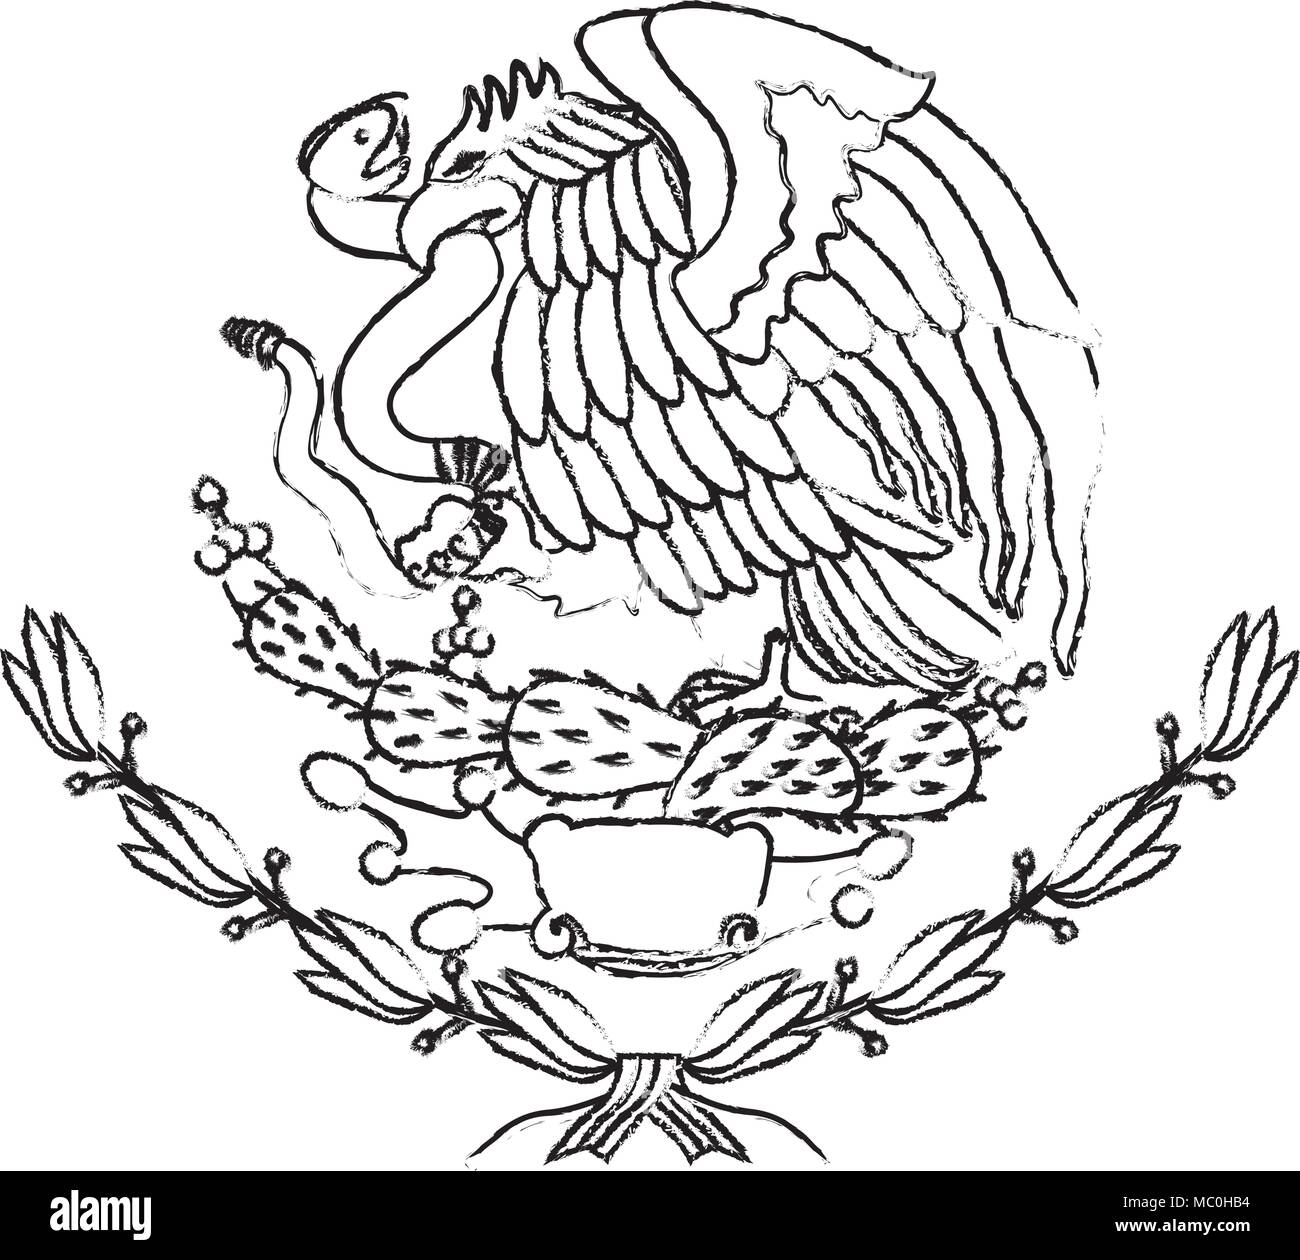 Aguila mexicana Imágenes de stock en blanco y negro - Alamy